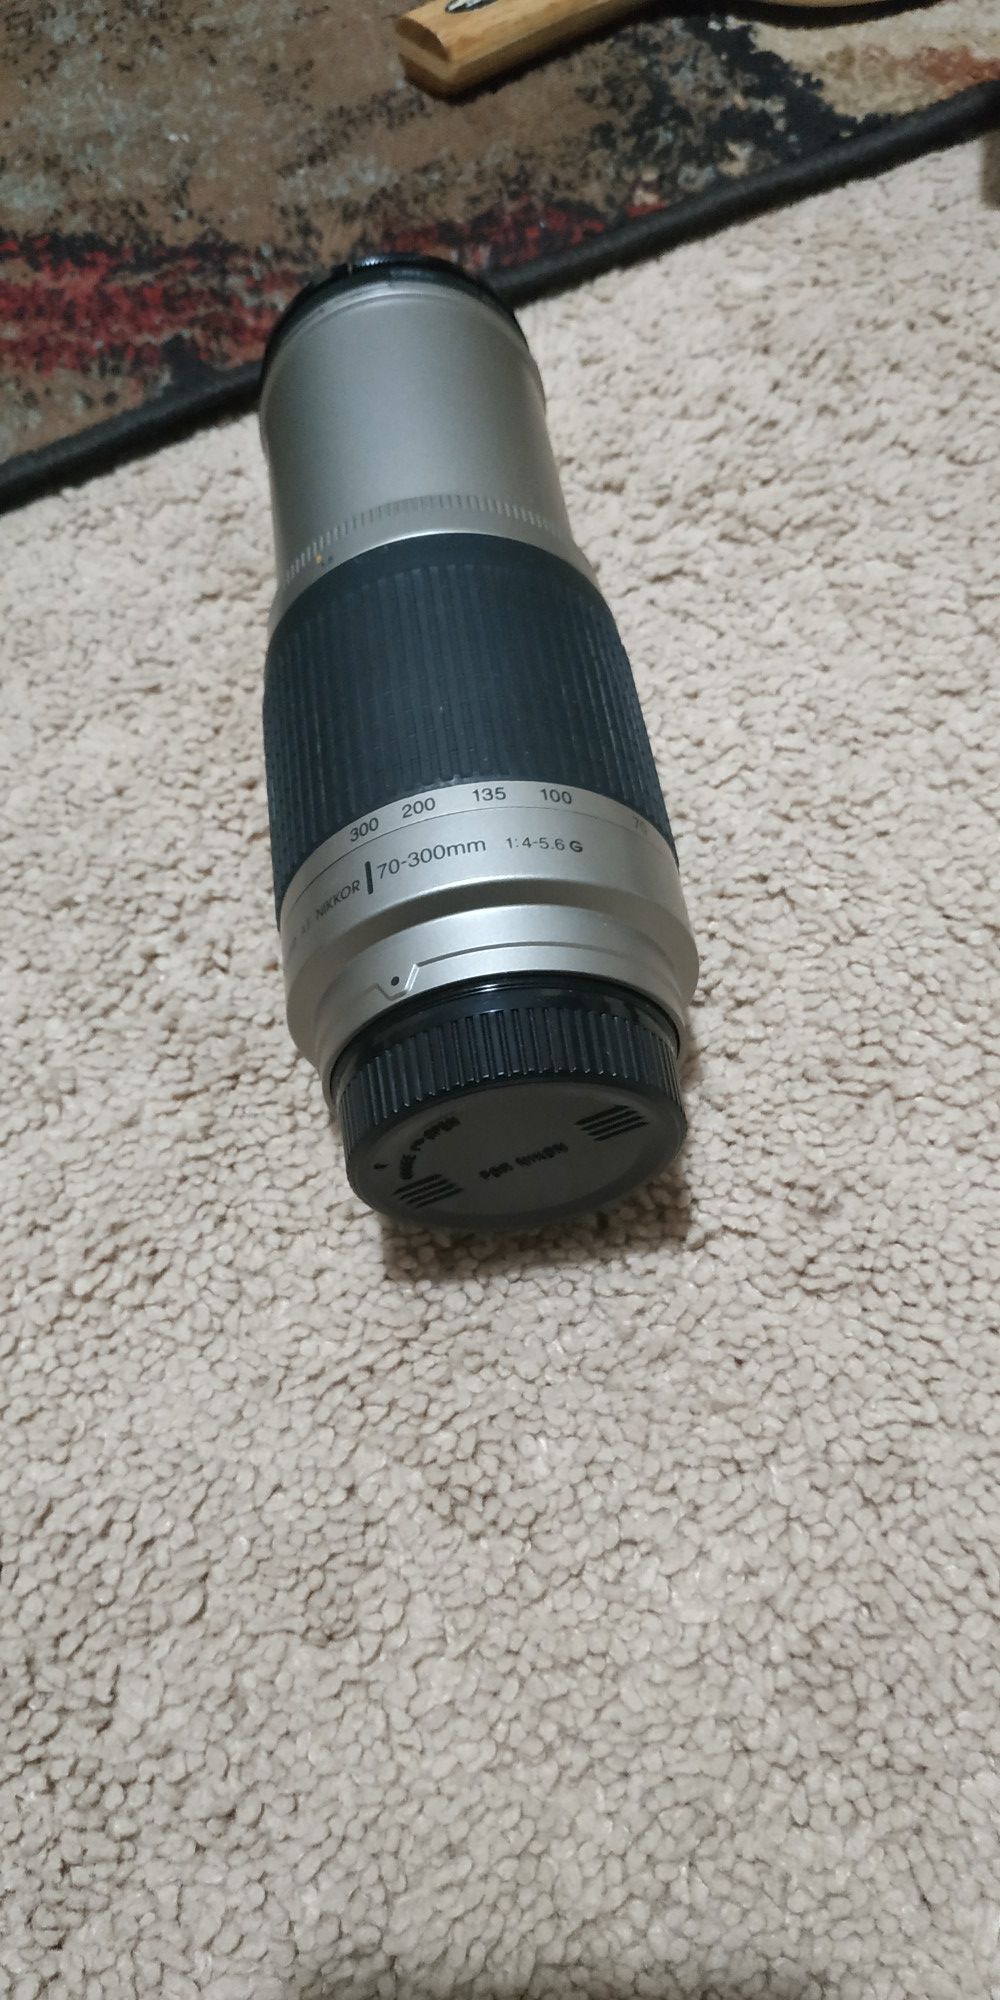 Nikon AF Nikkor 70-300mm 1:4-5.6G Lens